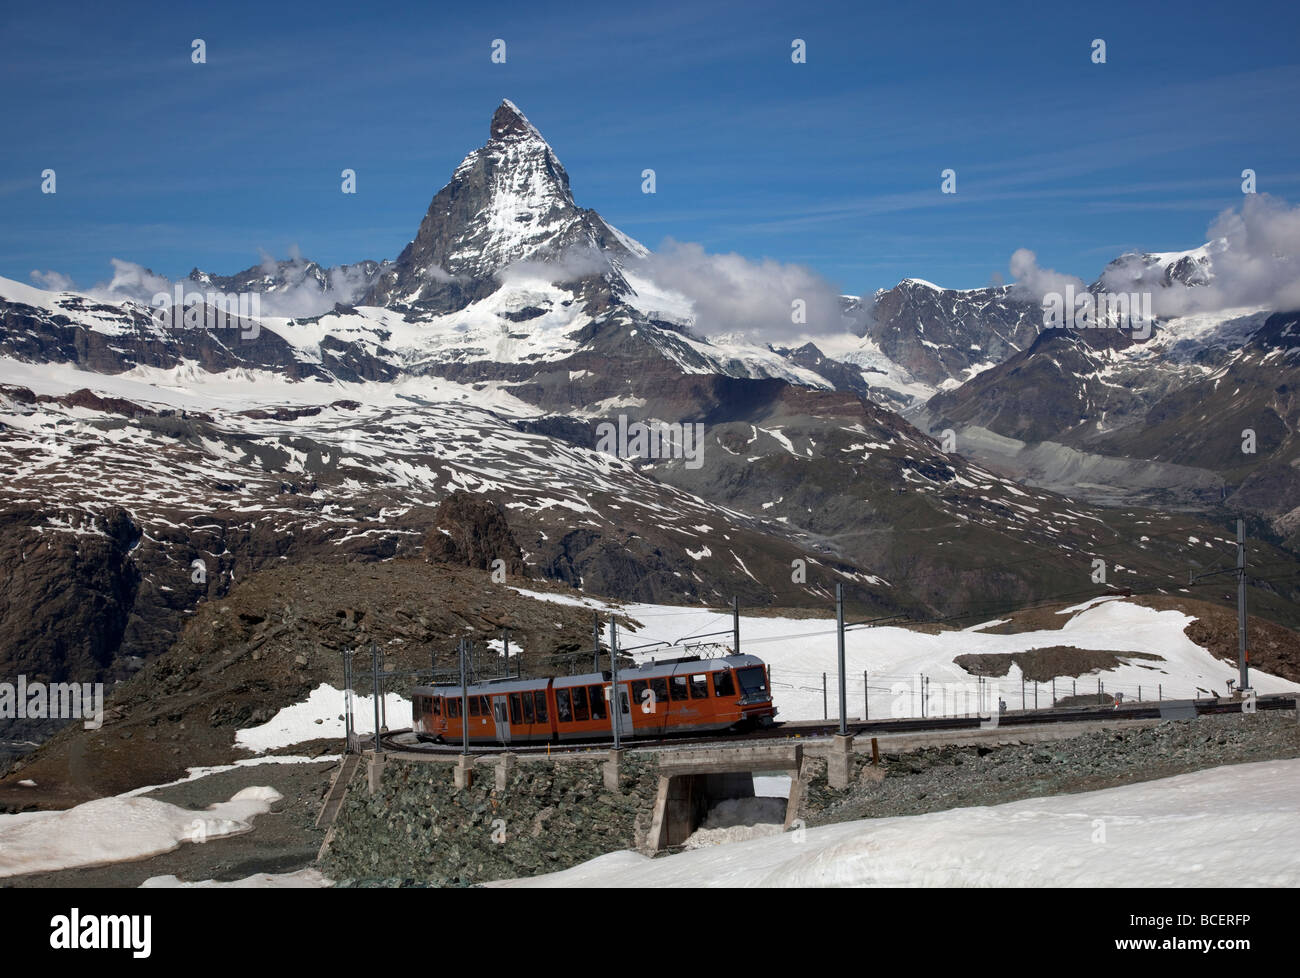 Blick Matterhorn Berg mit der berühmten Gornergrat Bahn Matterhorn-Bahn im Vordergrund, Zermatt, Schweiz, Europa Stockfoto